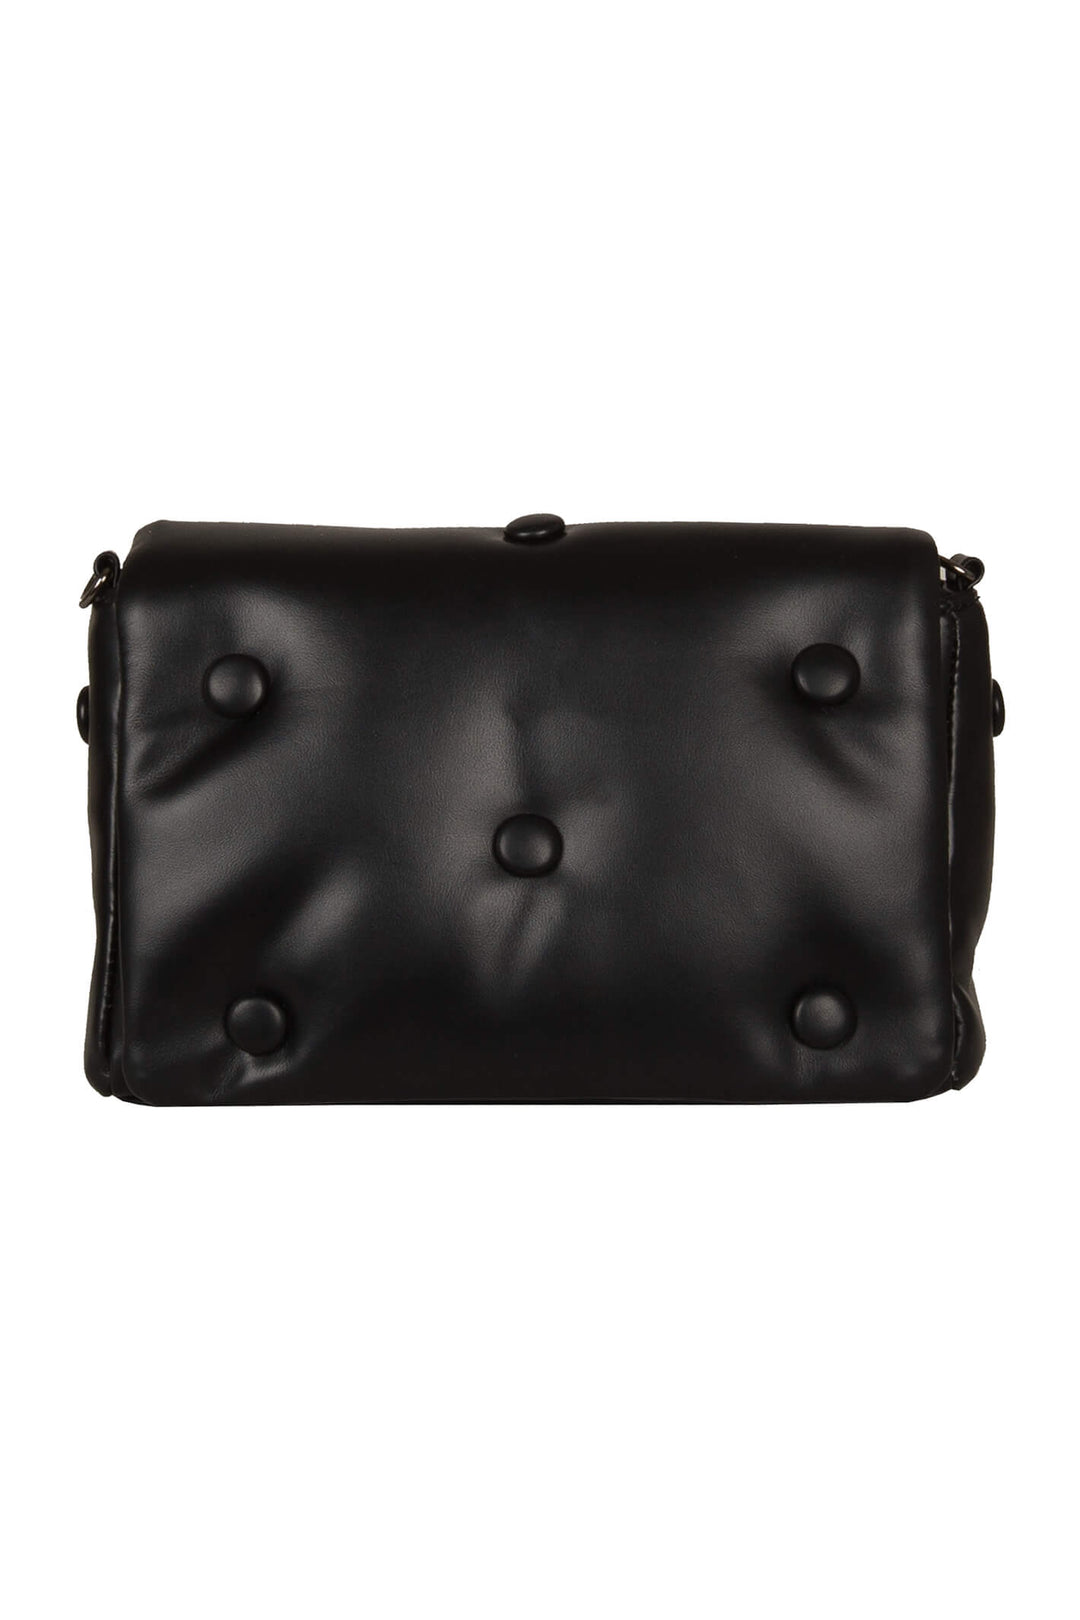 Bulaggi Angela 31249.10 Black Crossover Handbag - Shirley Allum Boutique